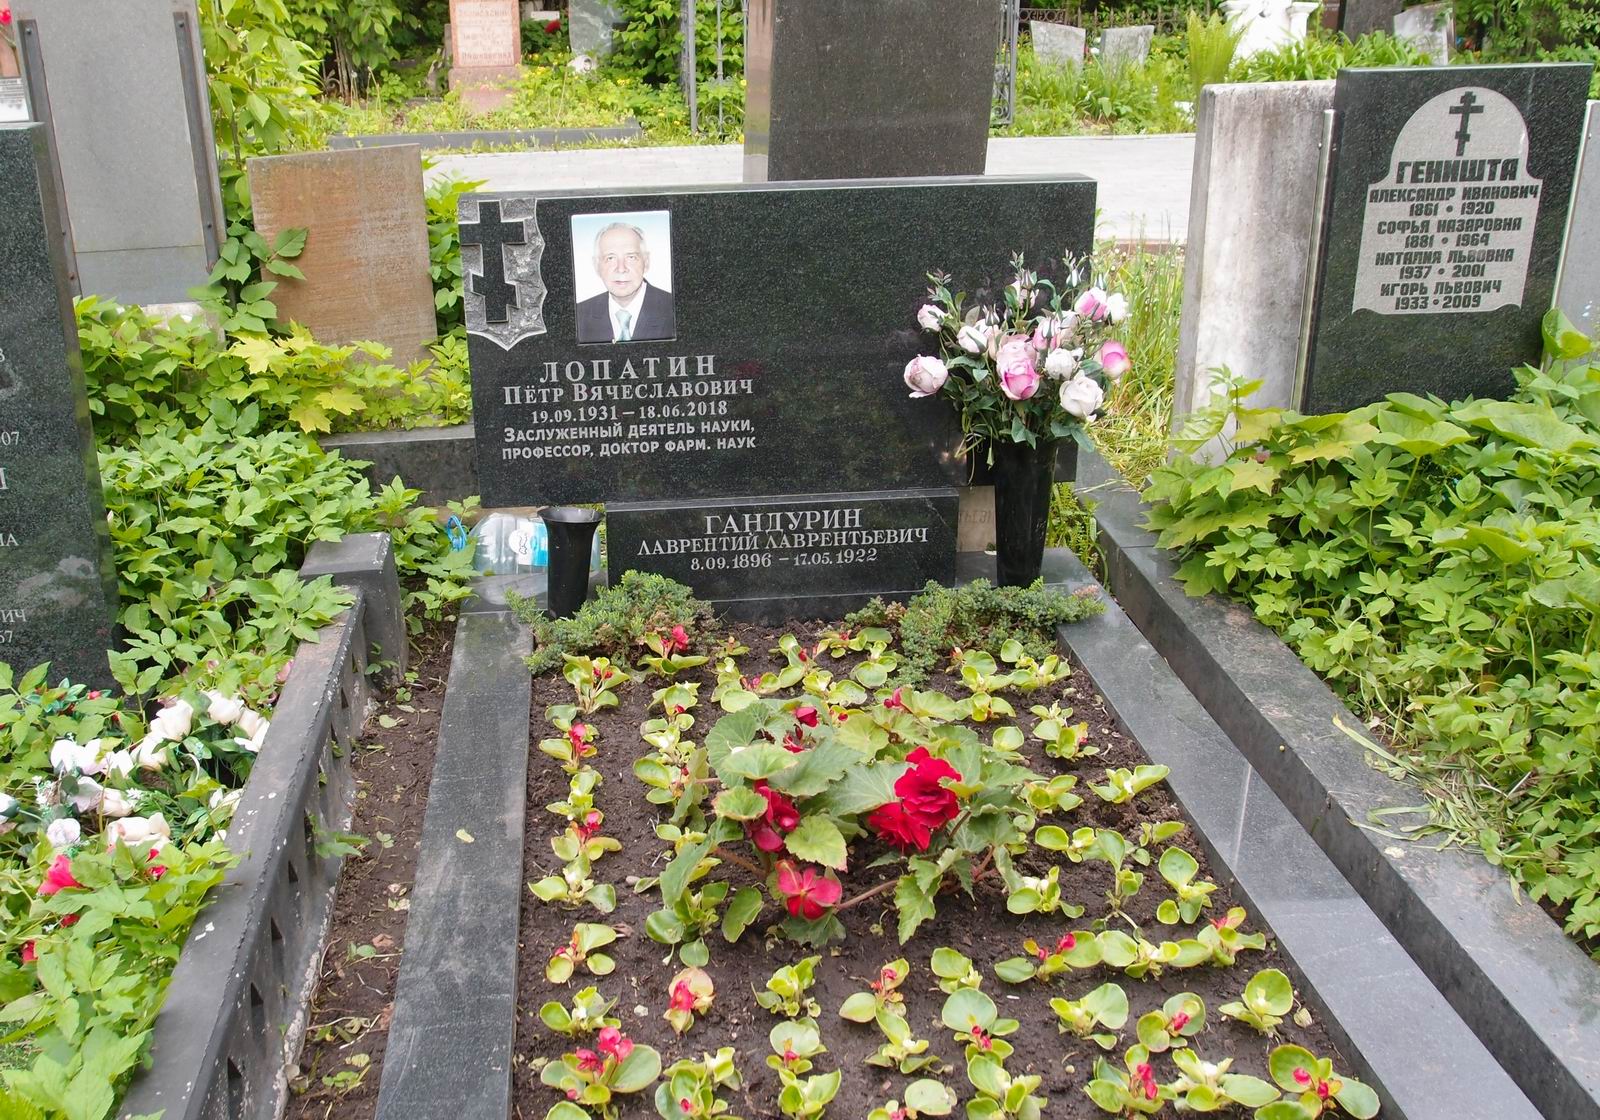 Памятник на могиле Гандурина Л.Л. (1896-1922), на Новодевичьем кладбище (4-2-12). Нажмите левую кнопку мыши чтобы увидеть предыдущий памятник.